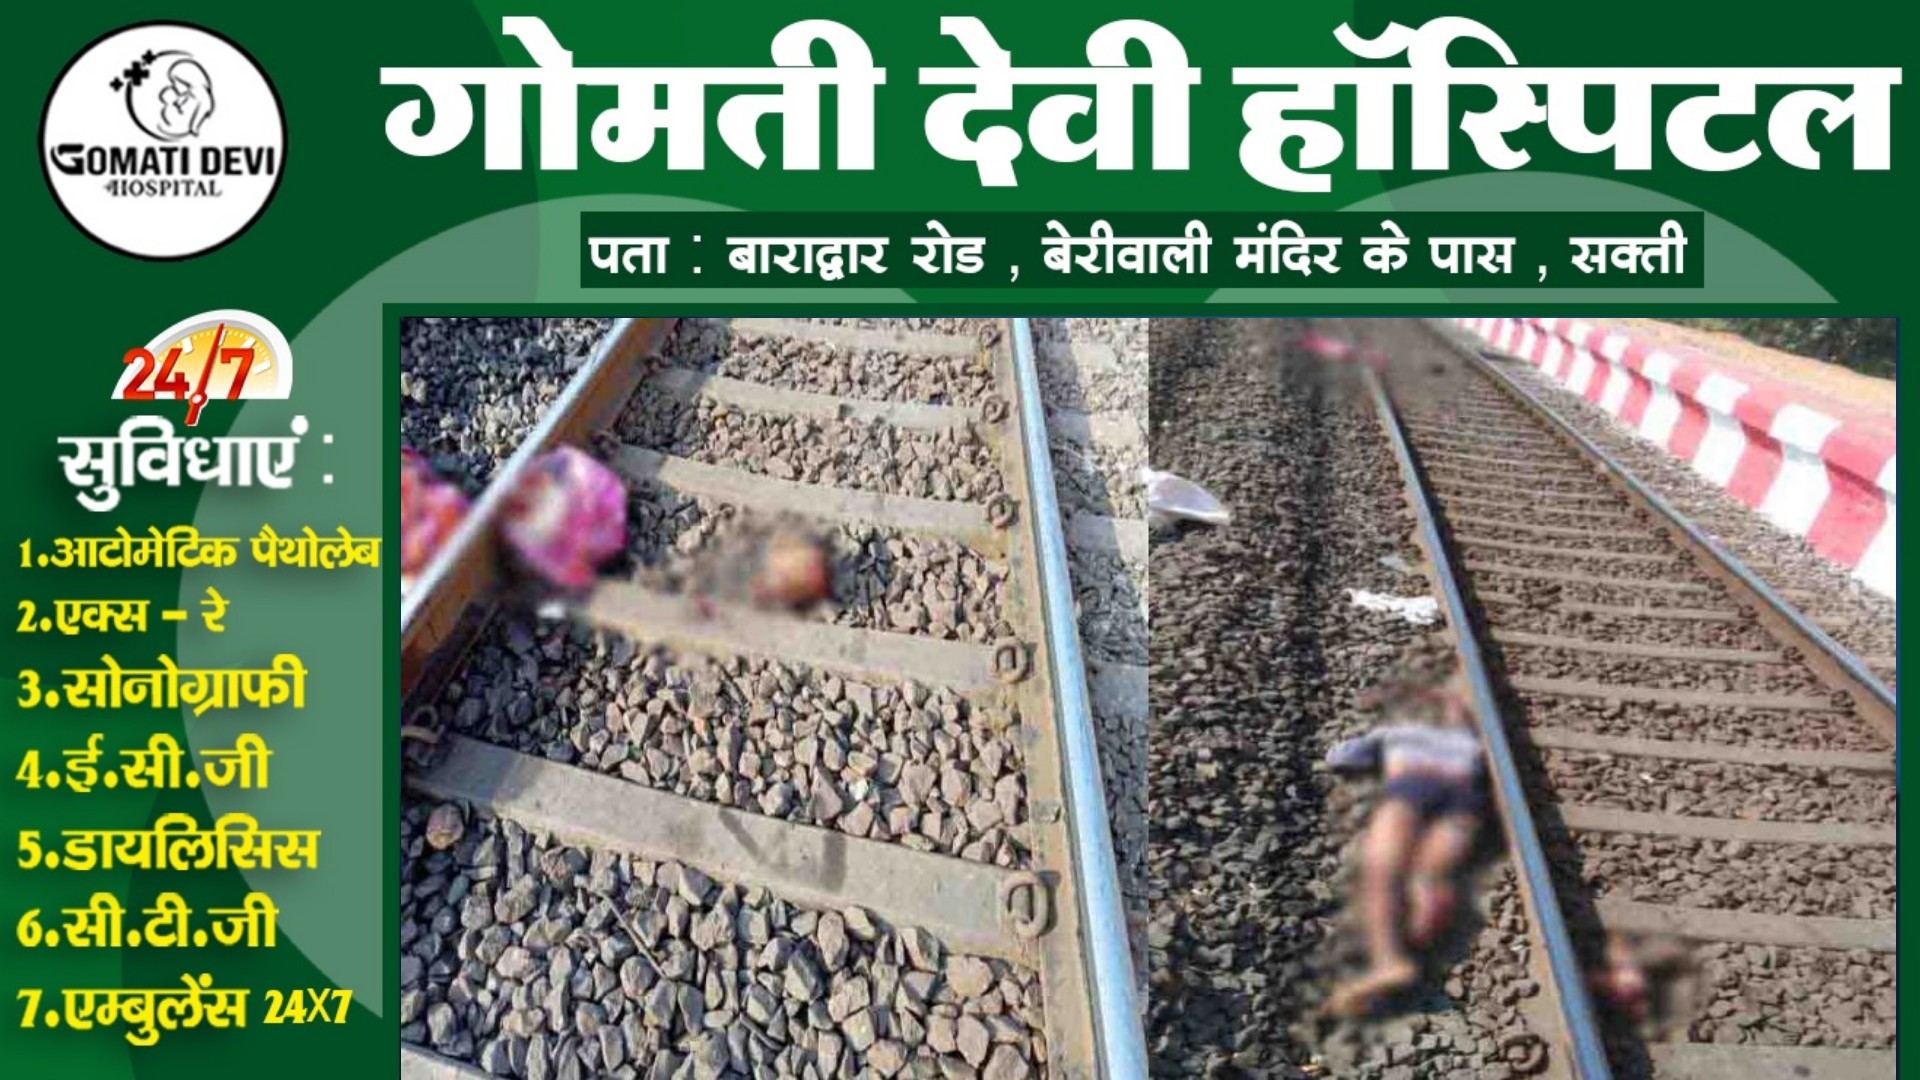 छत्तीसगढ़ - रेलवे ट्रैक पर अज्ञात युवक की सिरकटी लाश मिलने से मची सनसनी , पुलिस जांच में जुटी